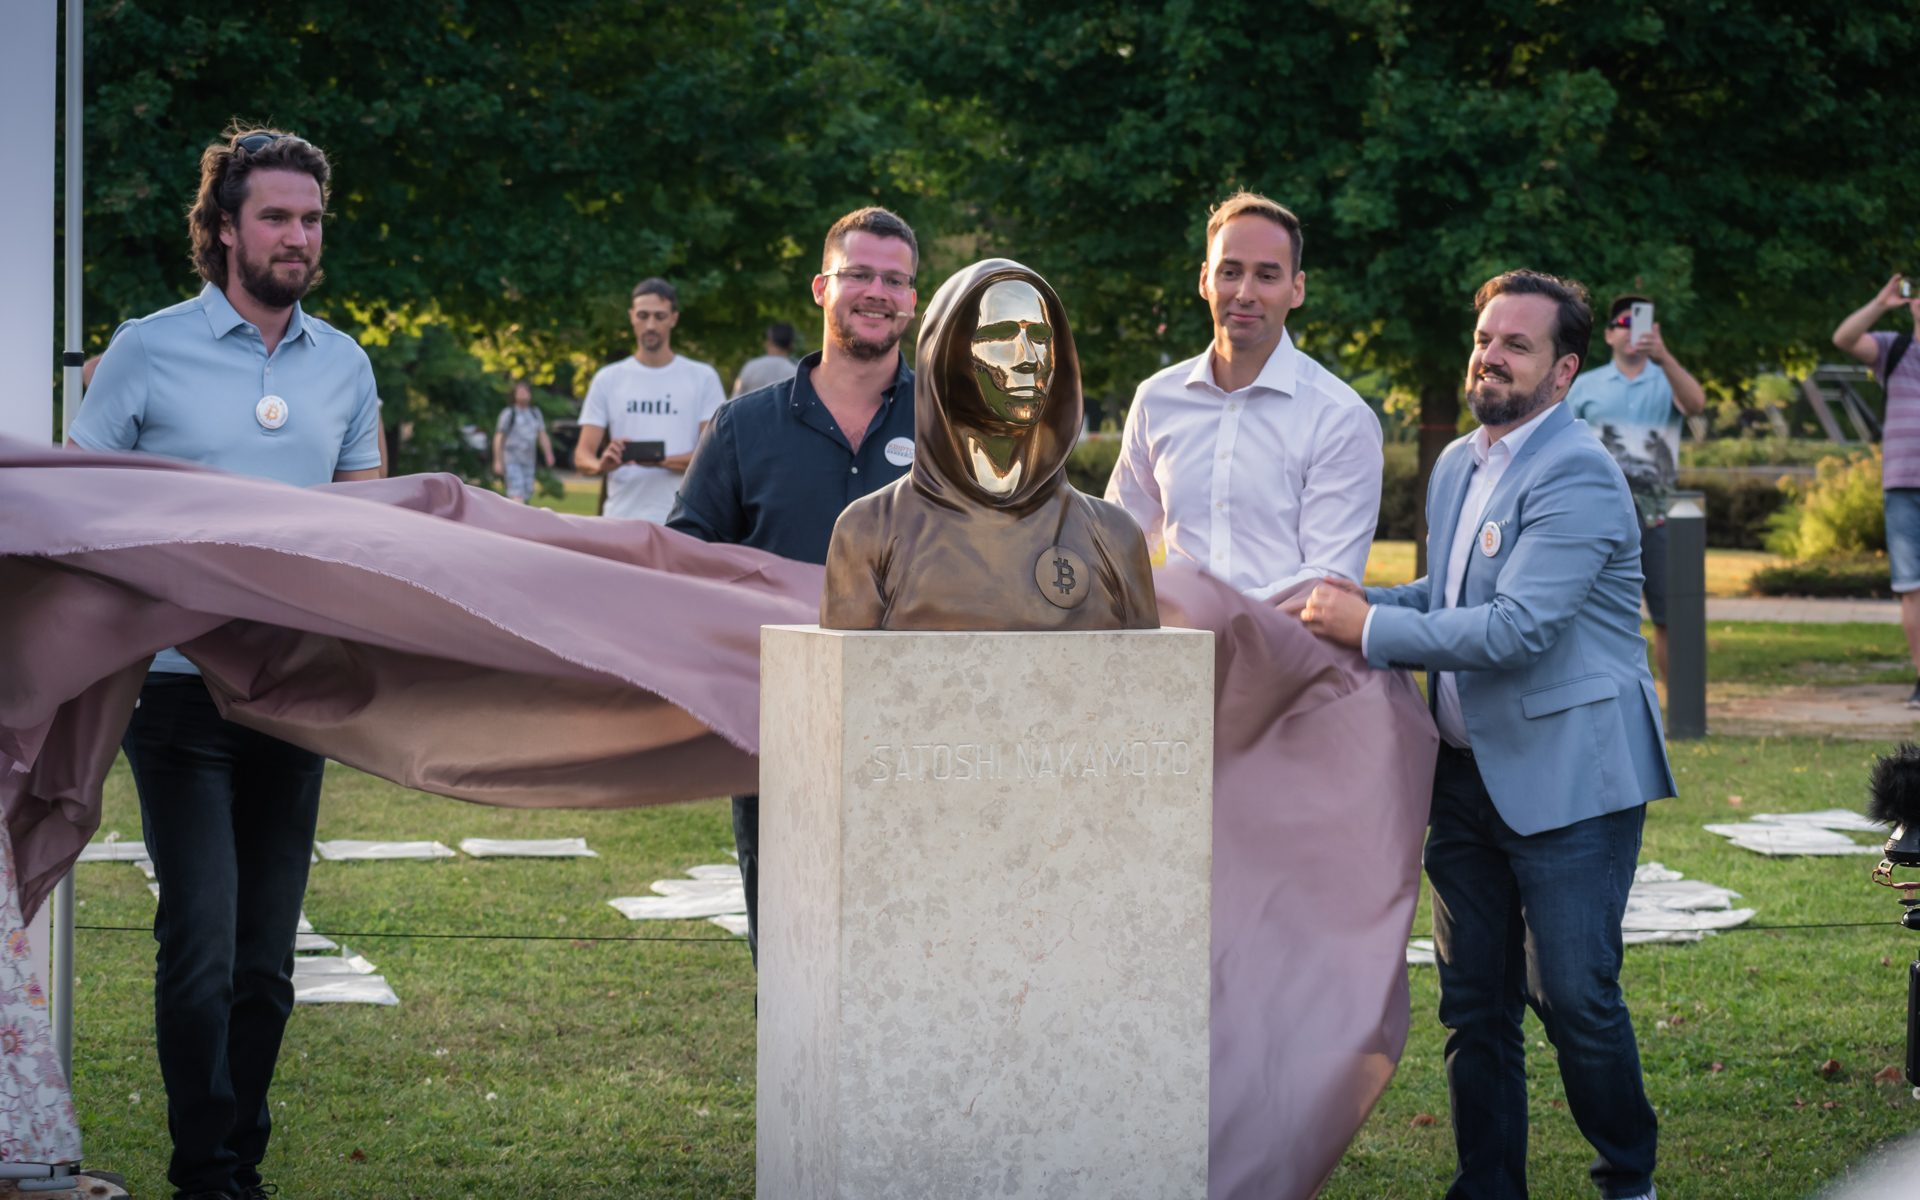 The bronze statue of the figureless Satoshi Nakamoto unveiled in Hungary